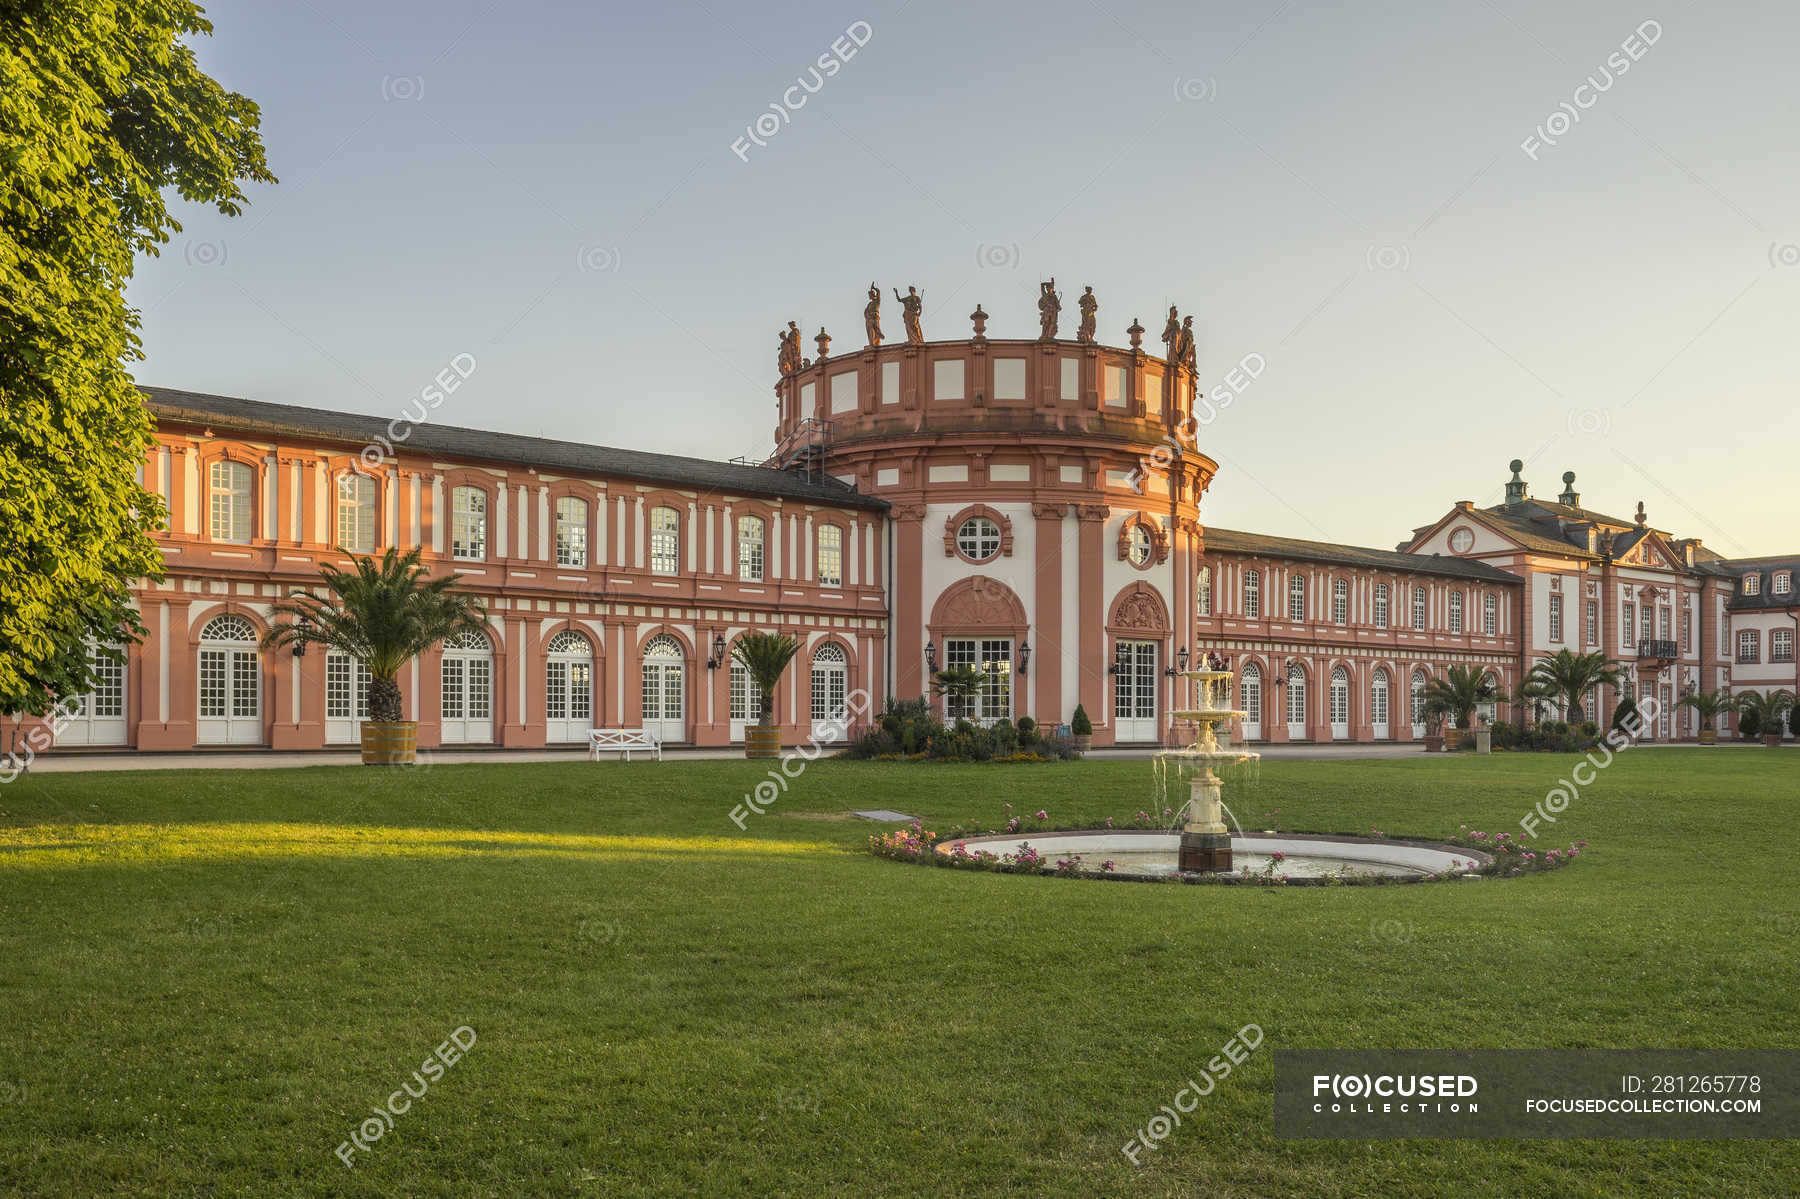 Germania, Assia, Wiesbaden, Palazzo Biebrich la sera — nessuno, destinazione di viaggio - Stock Photo | #281265778